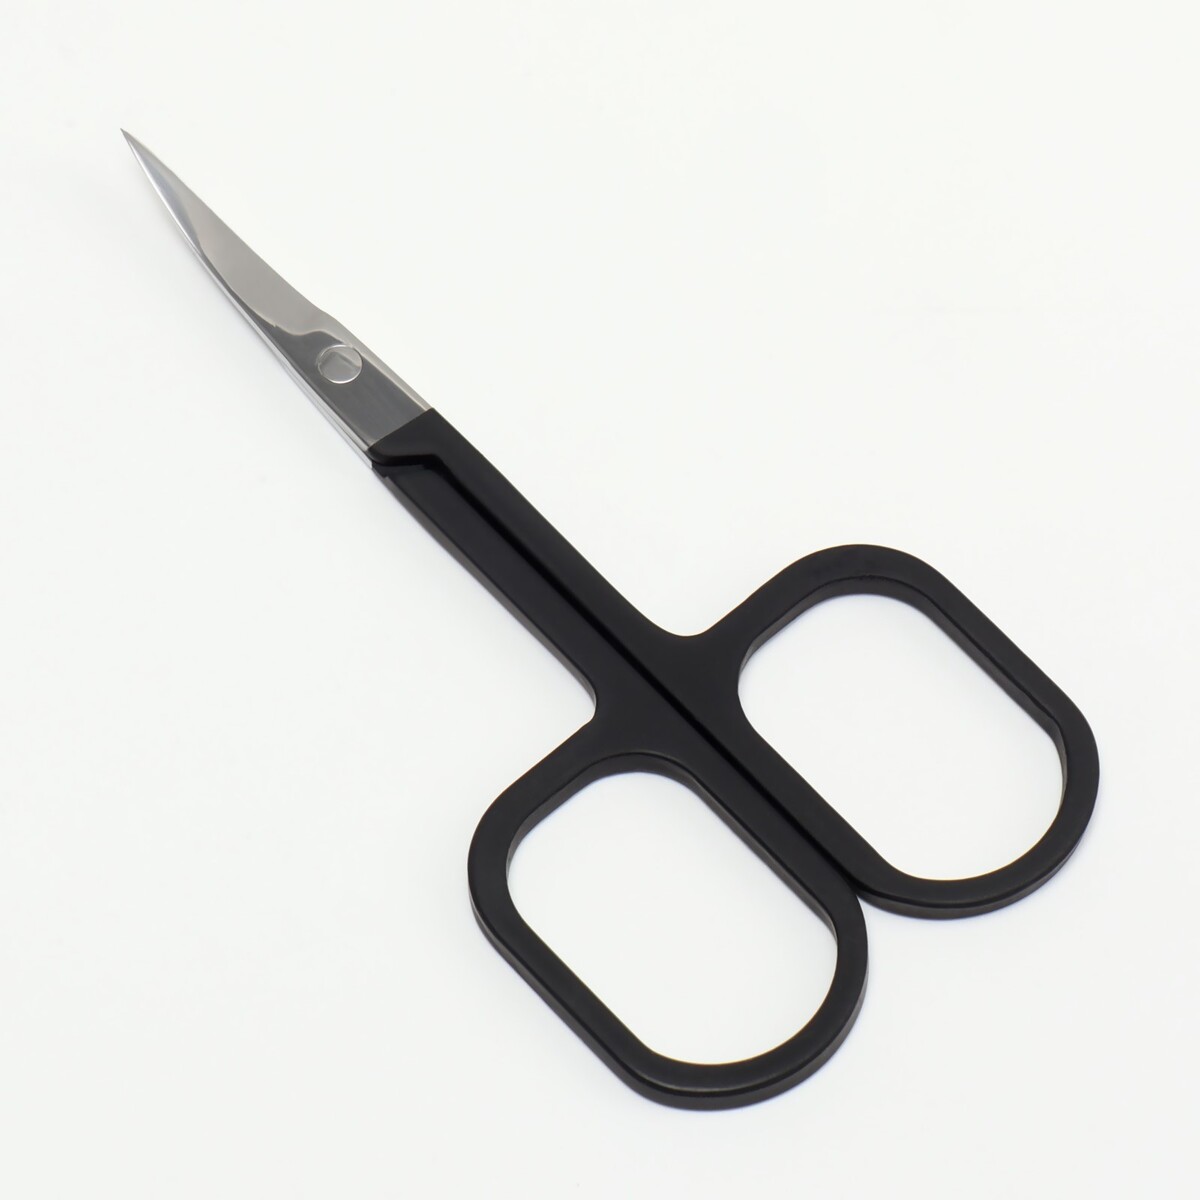 Ножницы маникюрные, узкие, загнутые, с прорезиненными ручками, 9 см, цвет серебристый/черный ножницы маникюрные узкие загнутые с прорезиненными ручками 9 см серебристый